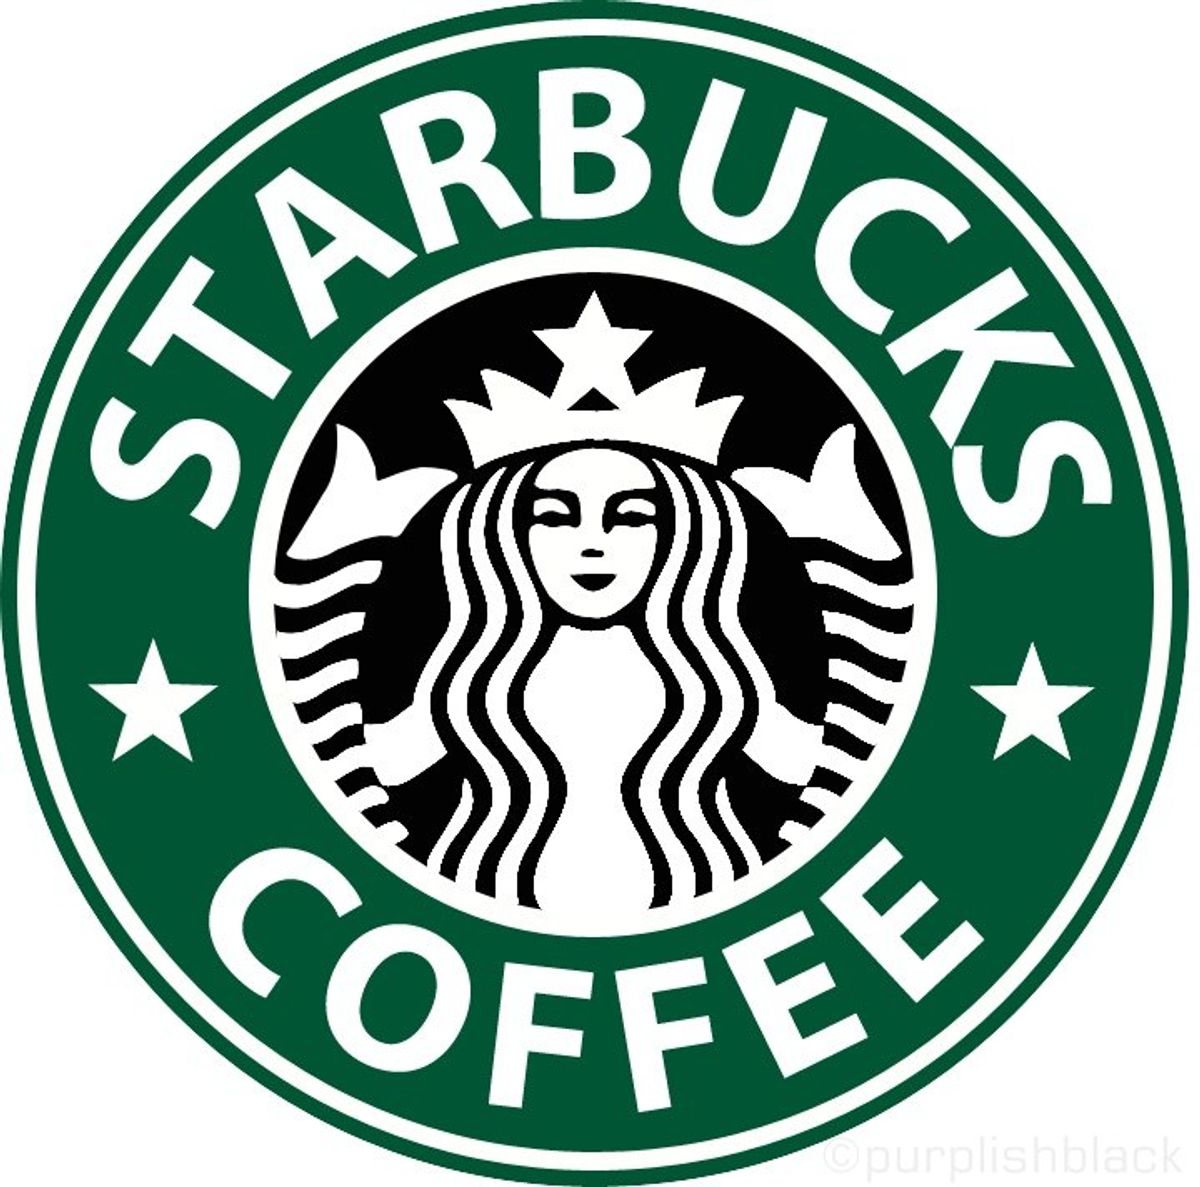 Top Ten Secret Menu Starbucks Drinks!